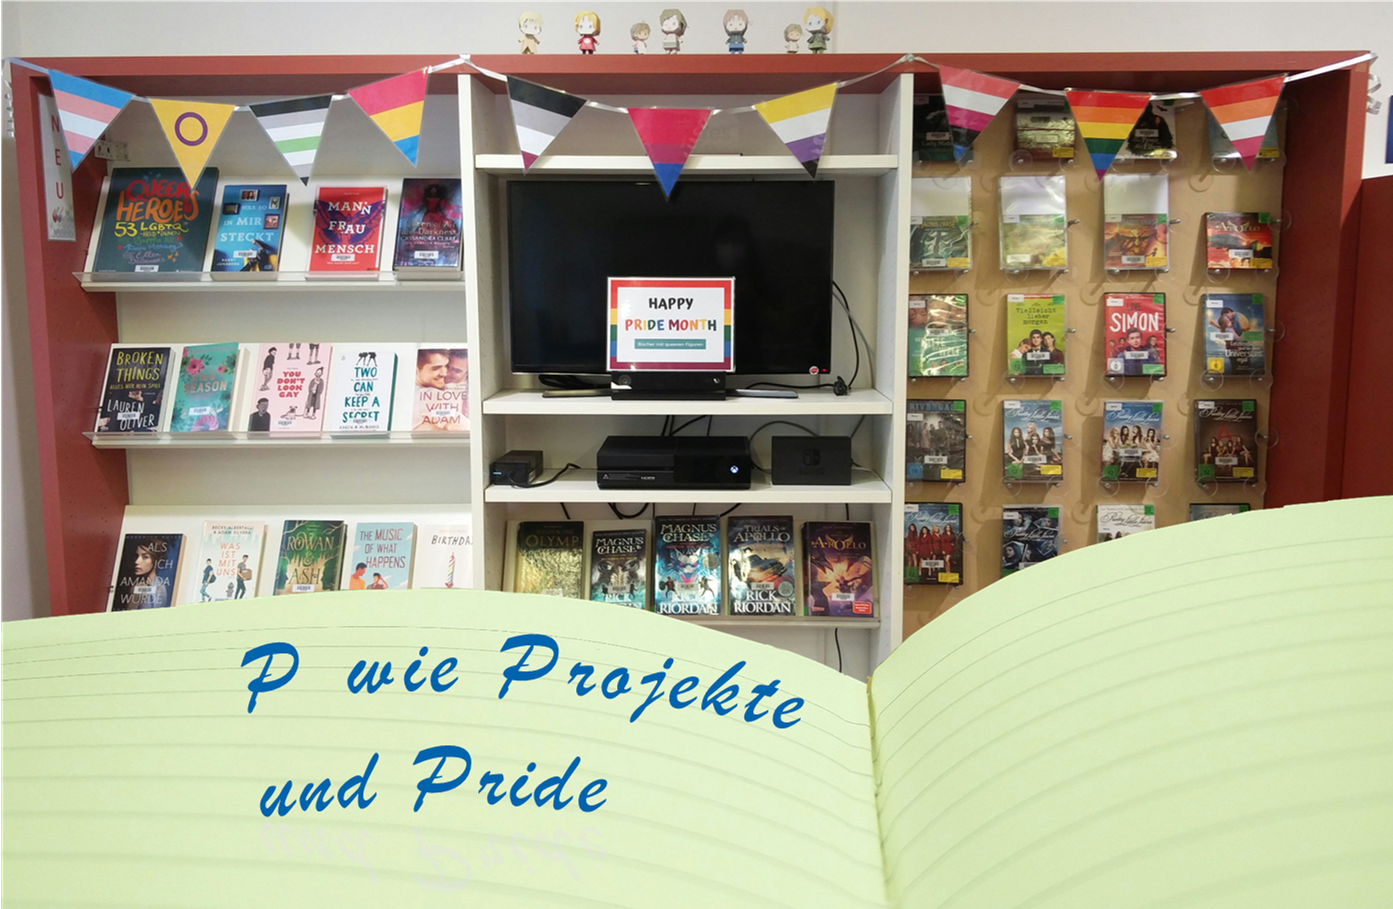 Im Hintergrund ist eine Medienausstellung zum Pride-Month, davor ein aufgeschlagenes Tagebuch mit der Aufschrift "P wie Projekte und Pride". (CC0)